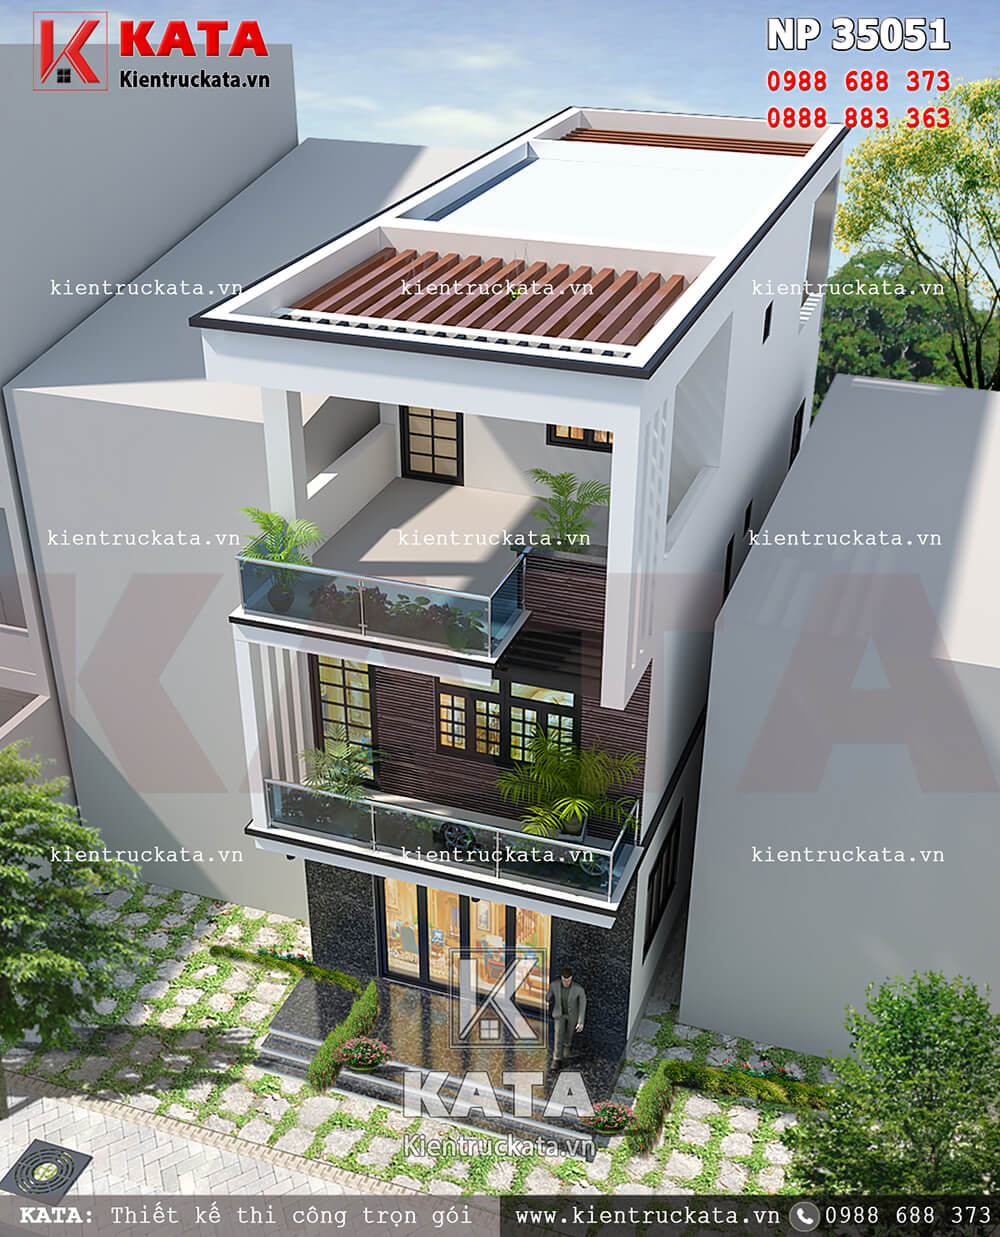 Mẫu thiết kế nhà lô phố 3 tầng hiện đại tại Ninh Bình nhìn từ trên cao